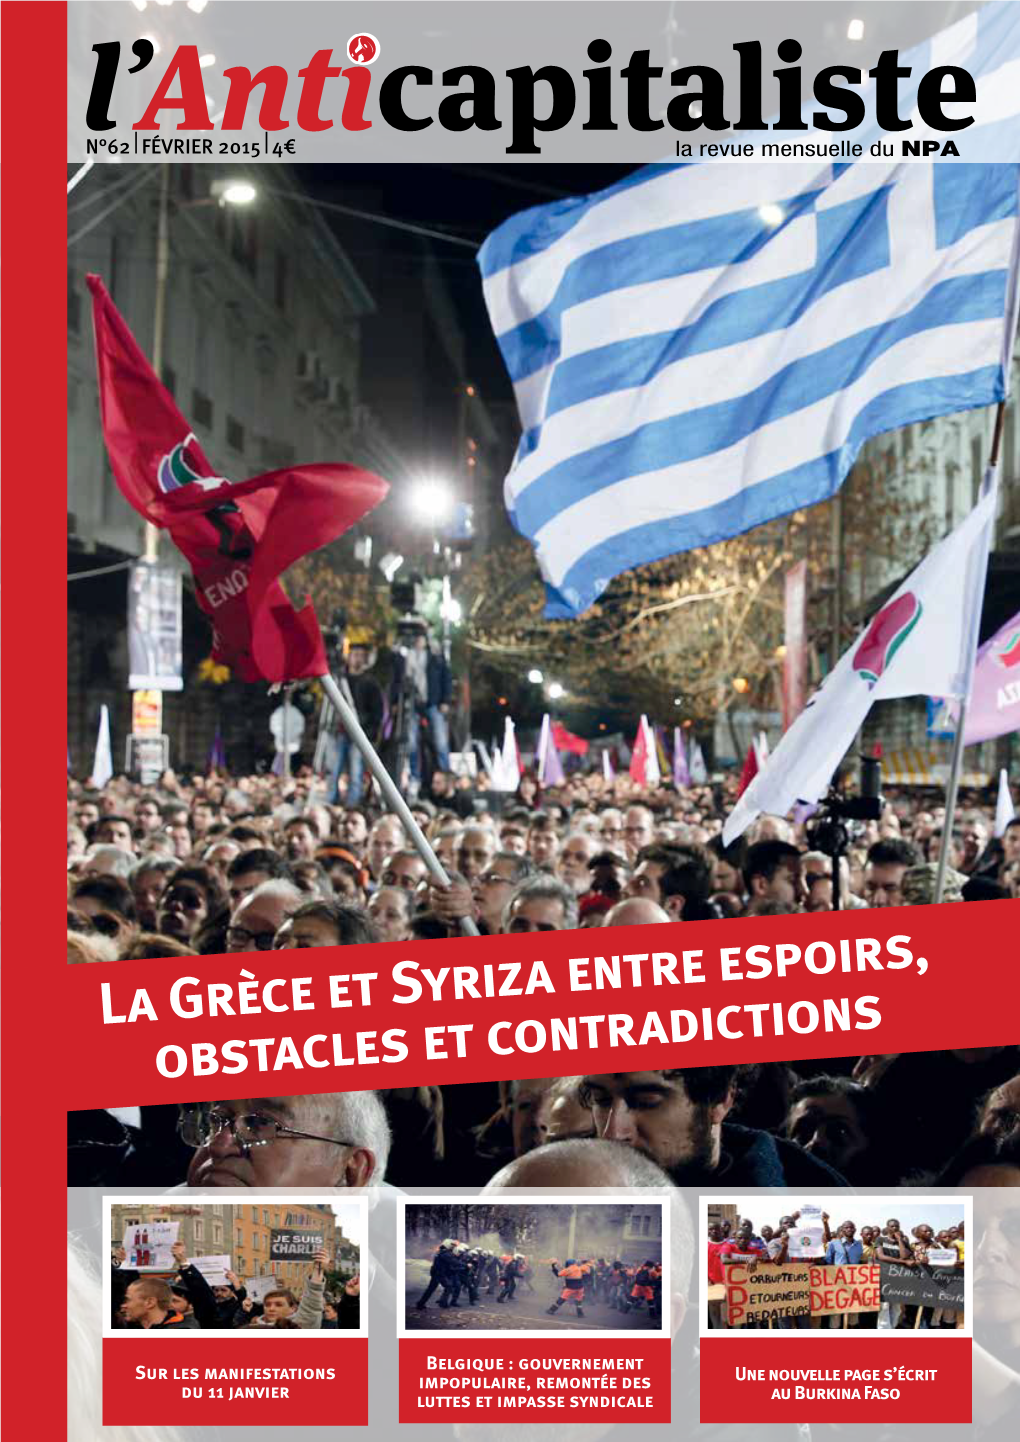 La Grèce Et Syriza Entre Espoirs, Obstacles Et Contradictions